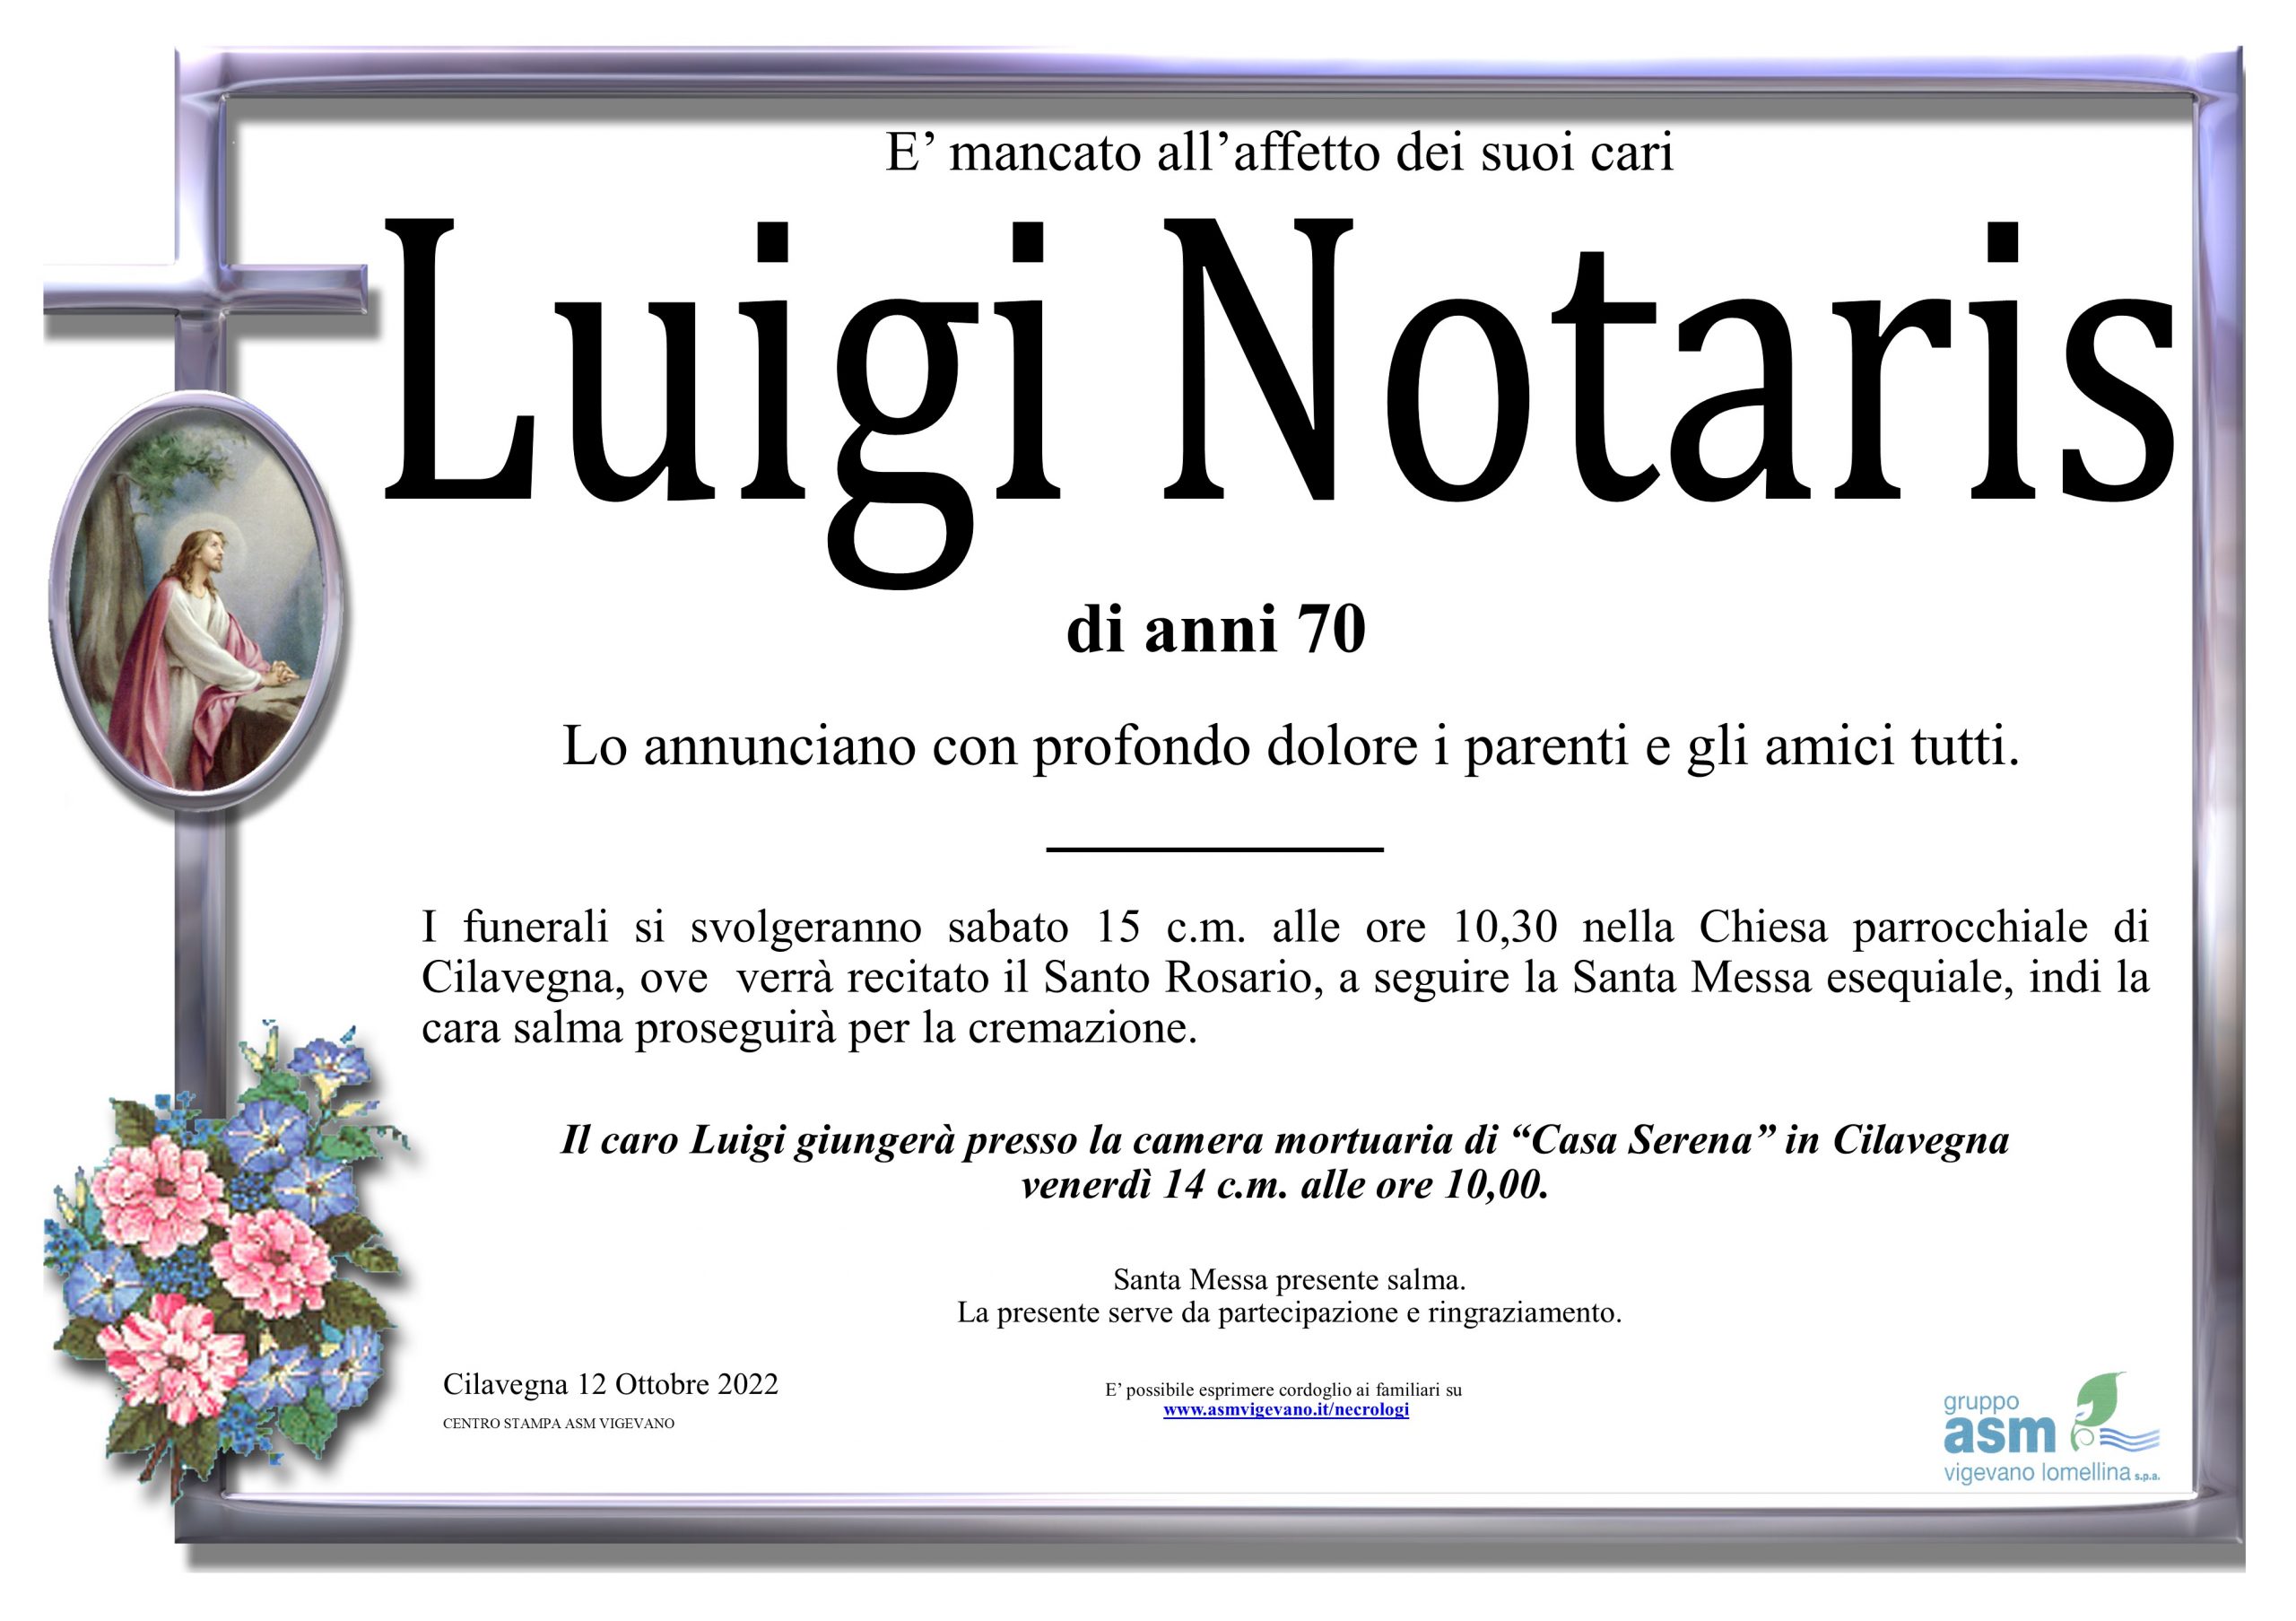 Luigi Notaris